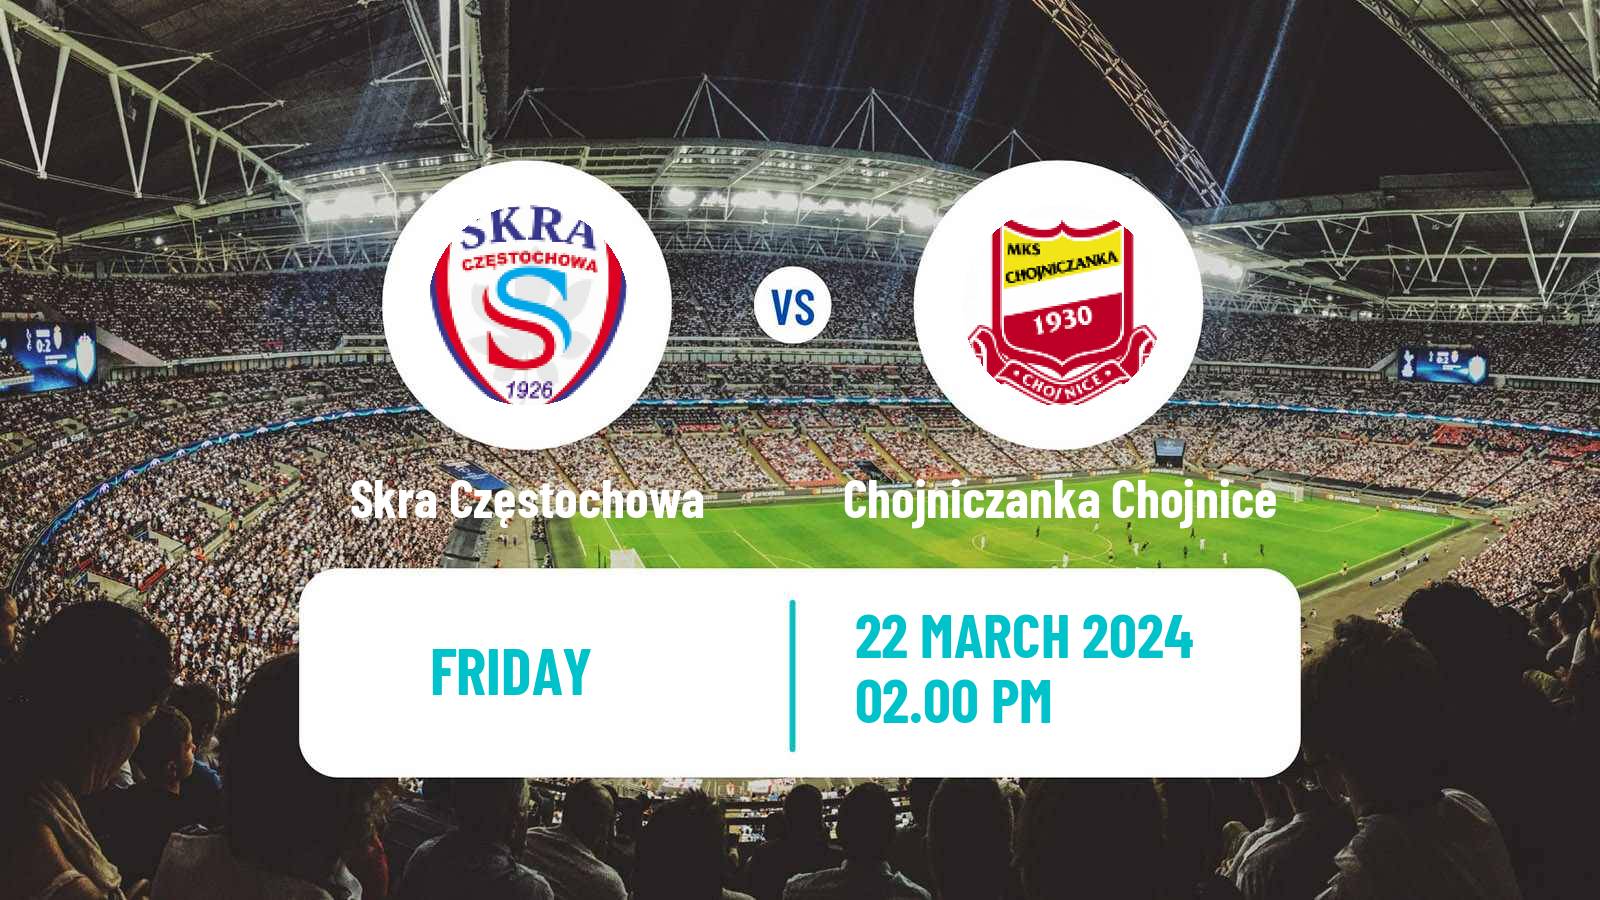 Soccer Polish Division 2 Skra Częstochowa - Chojniczanka Chojnice